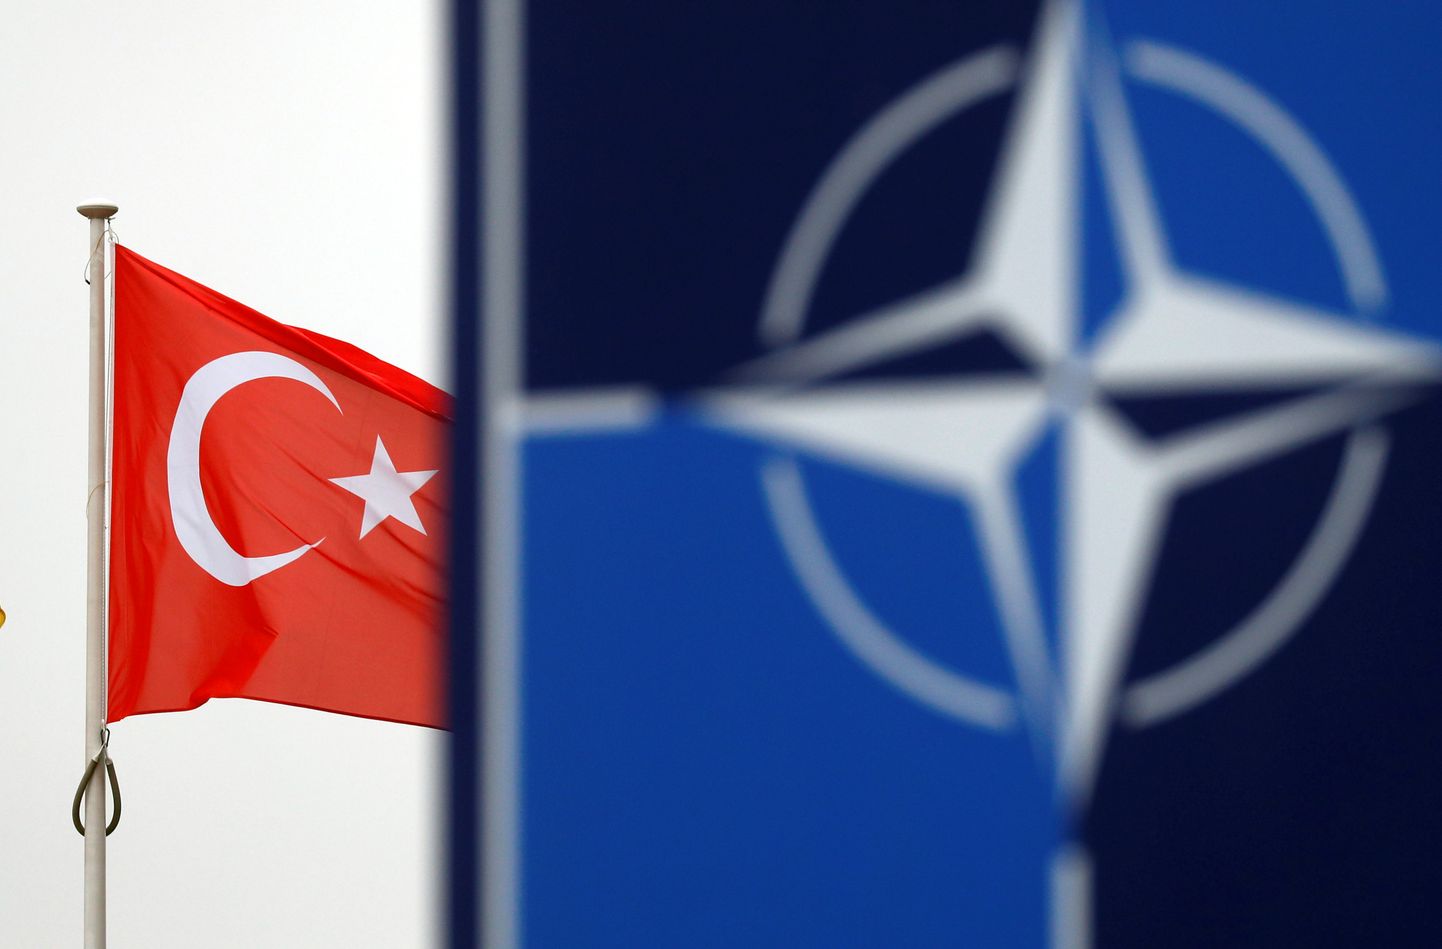 Türgi keeldub toetamast NATO Balti riikide ja Poola kaitseplaani